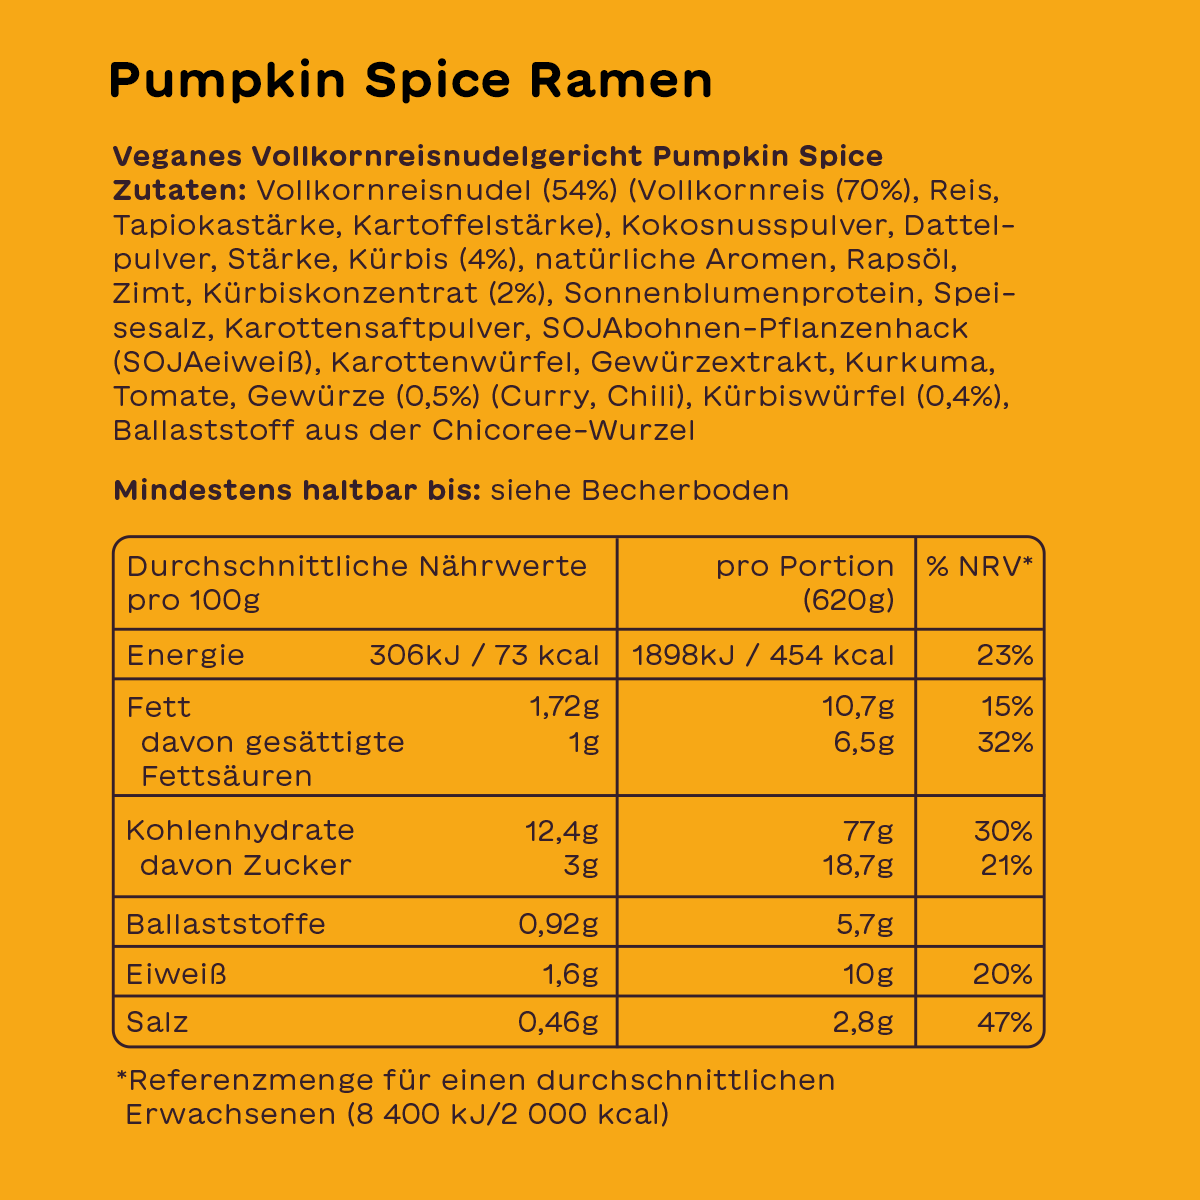 Pumpkin Spice Ramen